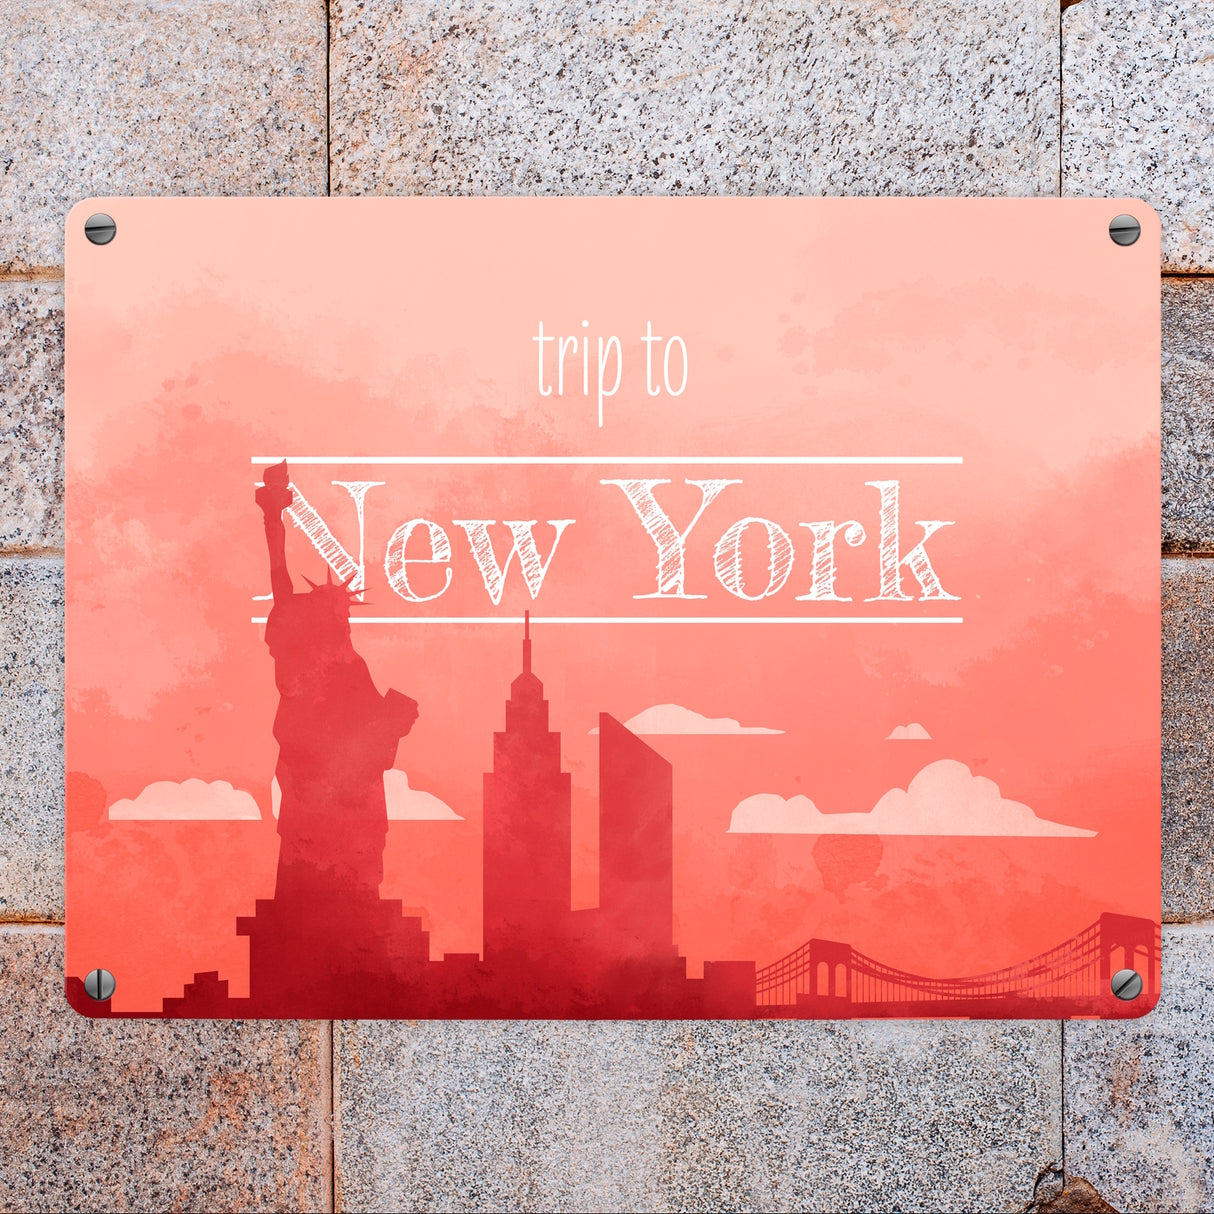 Metallschild in 15x20 cm für Fans von Städtetrips mit der Silhouette von New York in orange